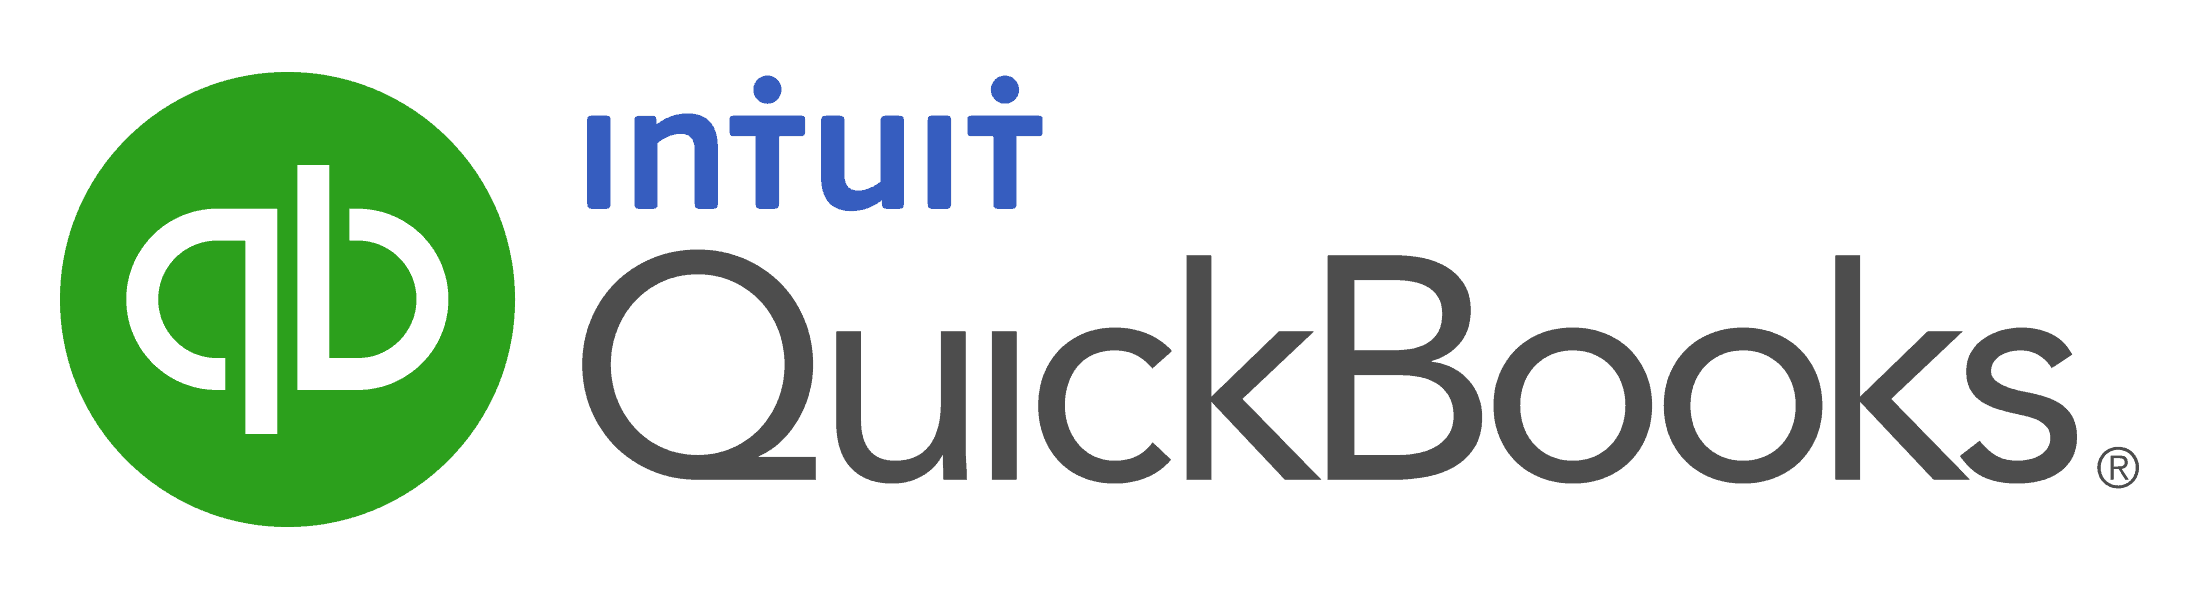 Intuit QuickBooks 